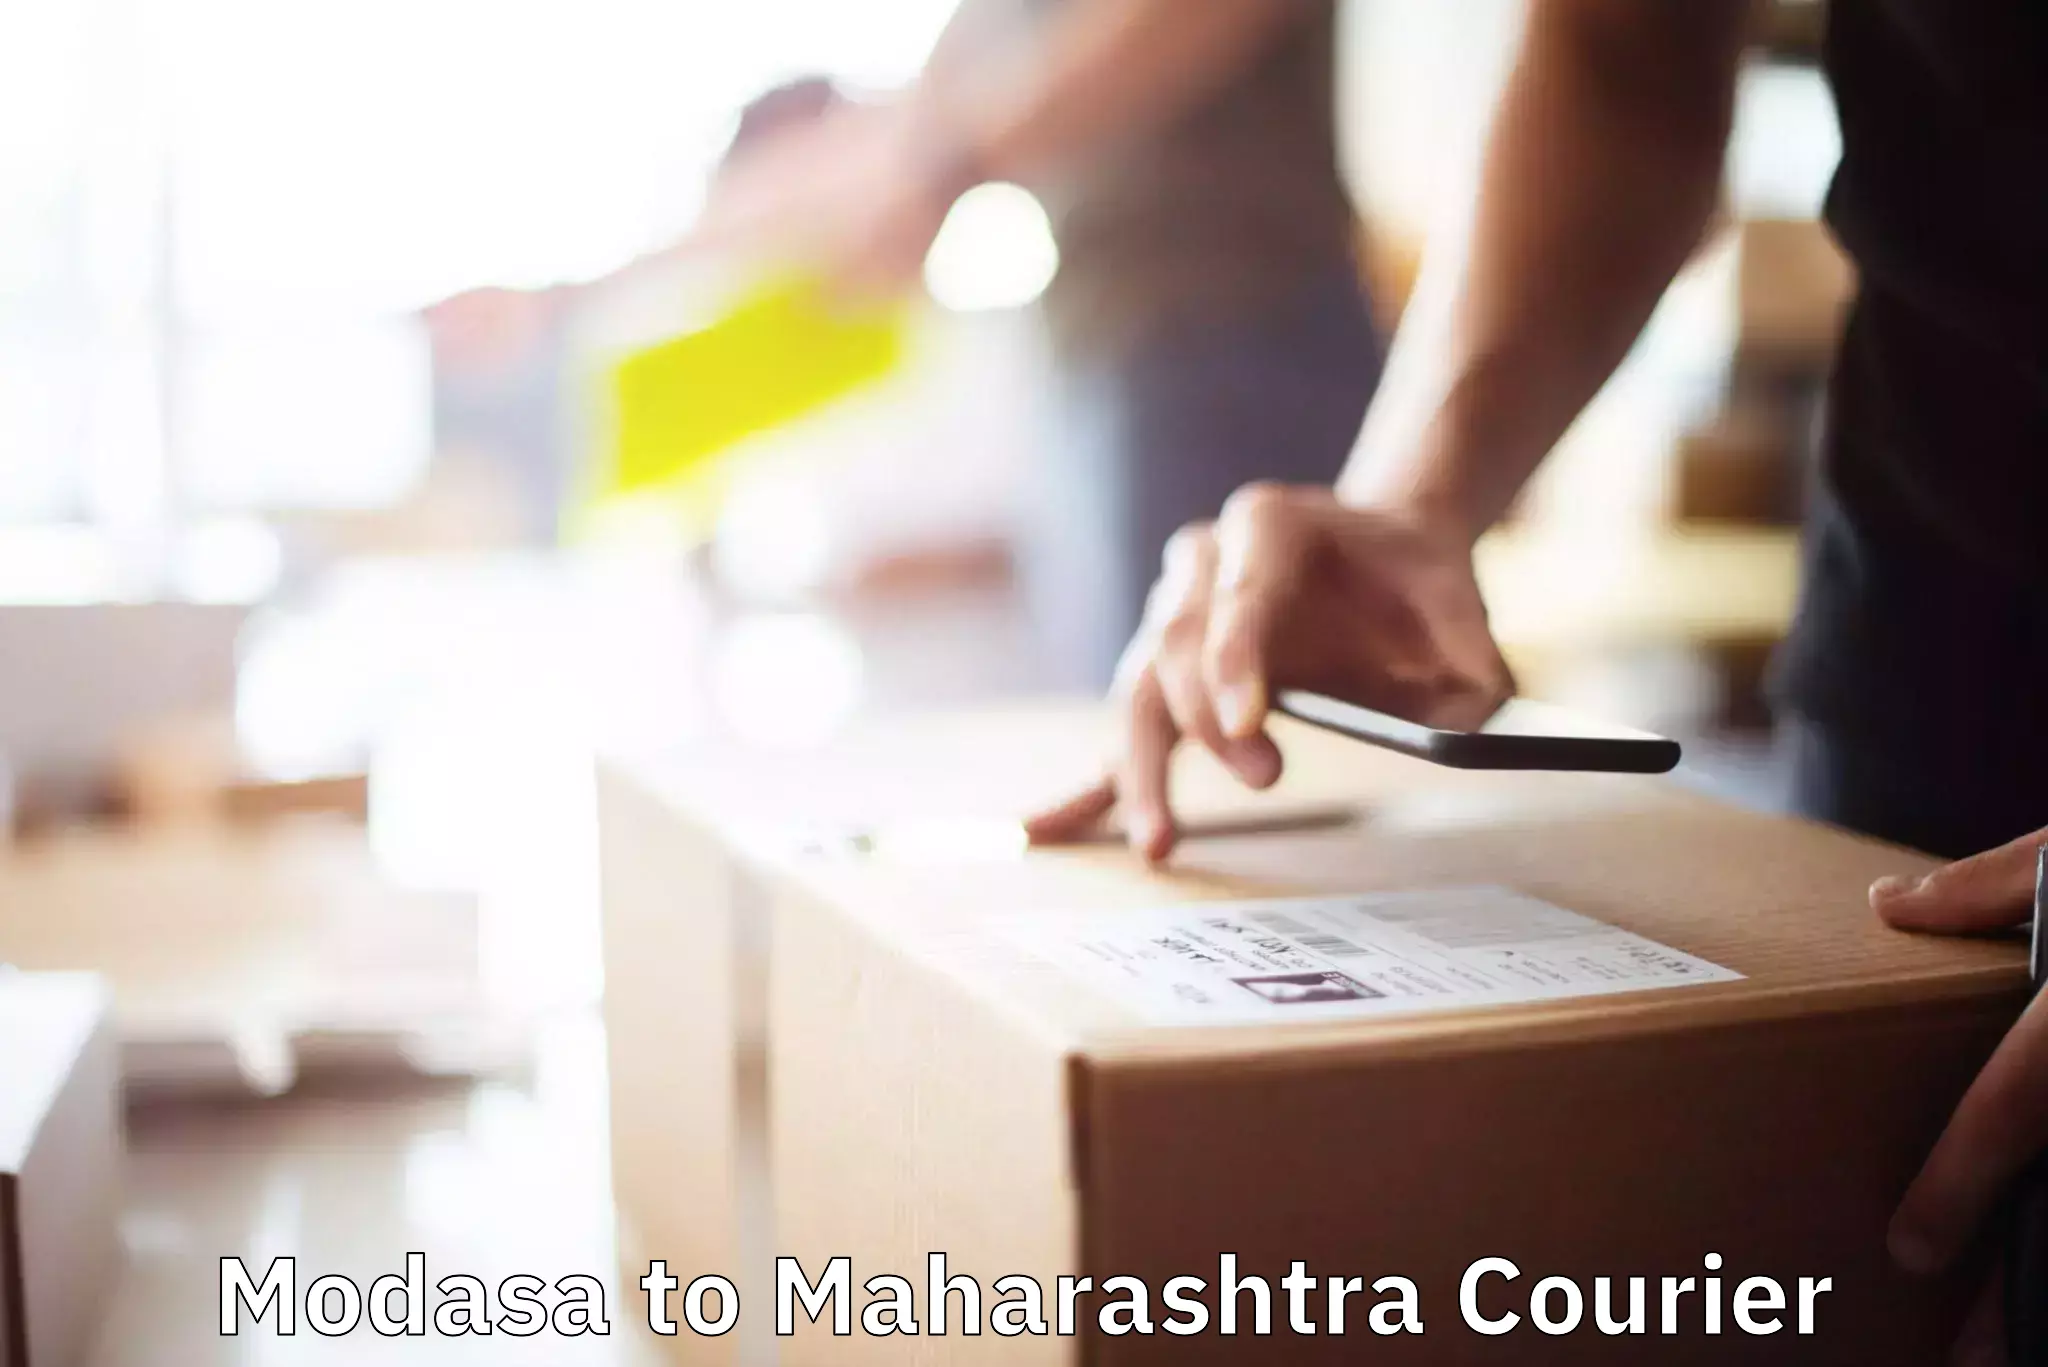 Moving and packing experts Modasa to Maharashtra